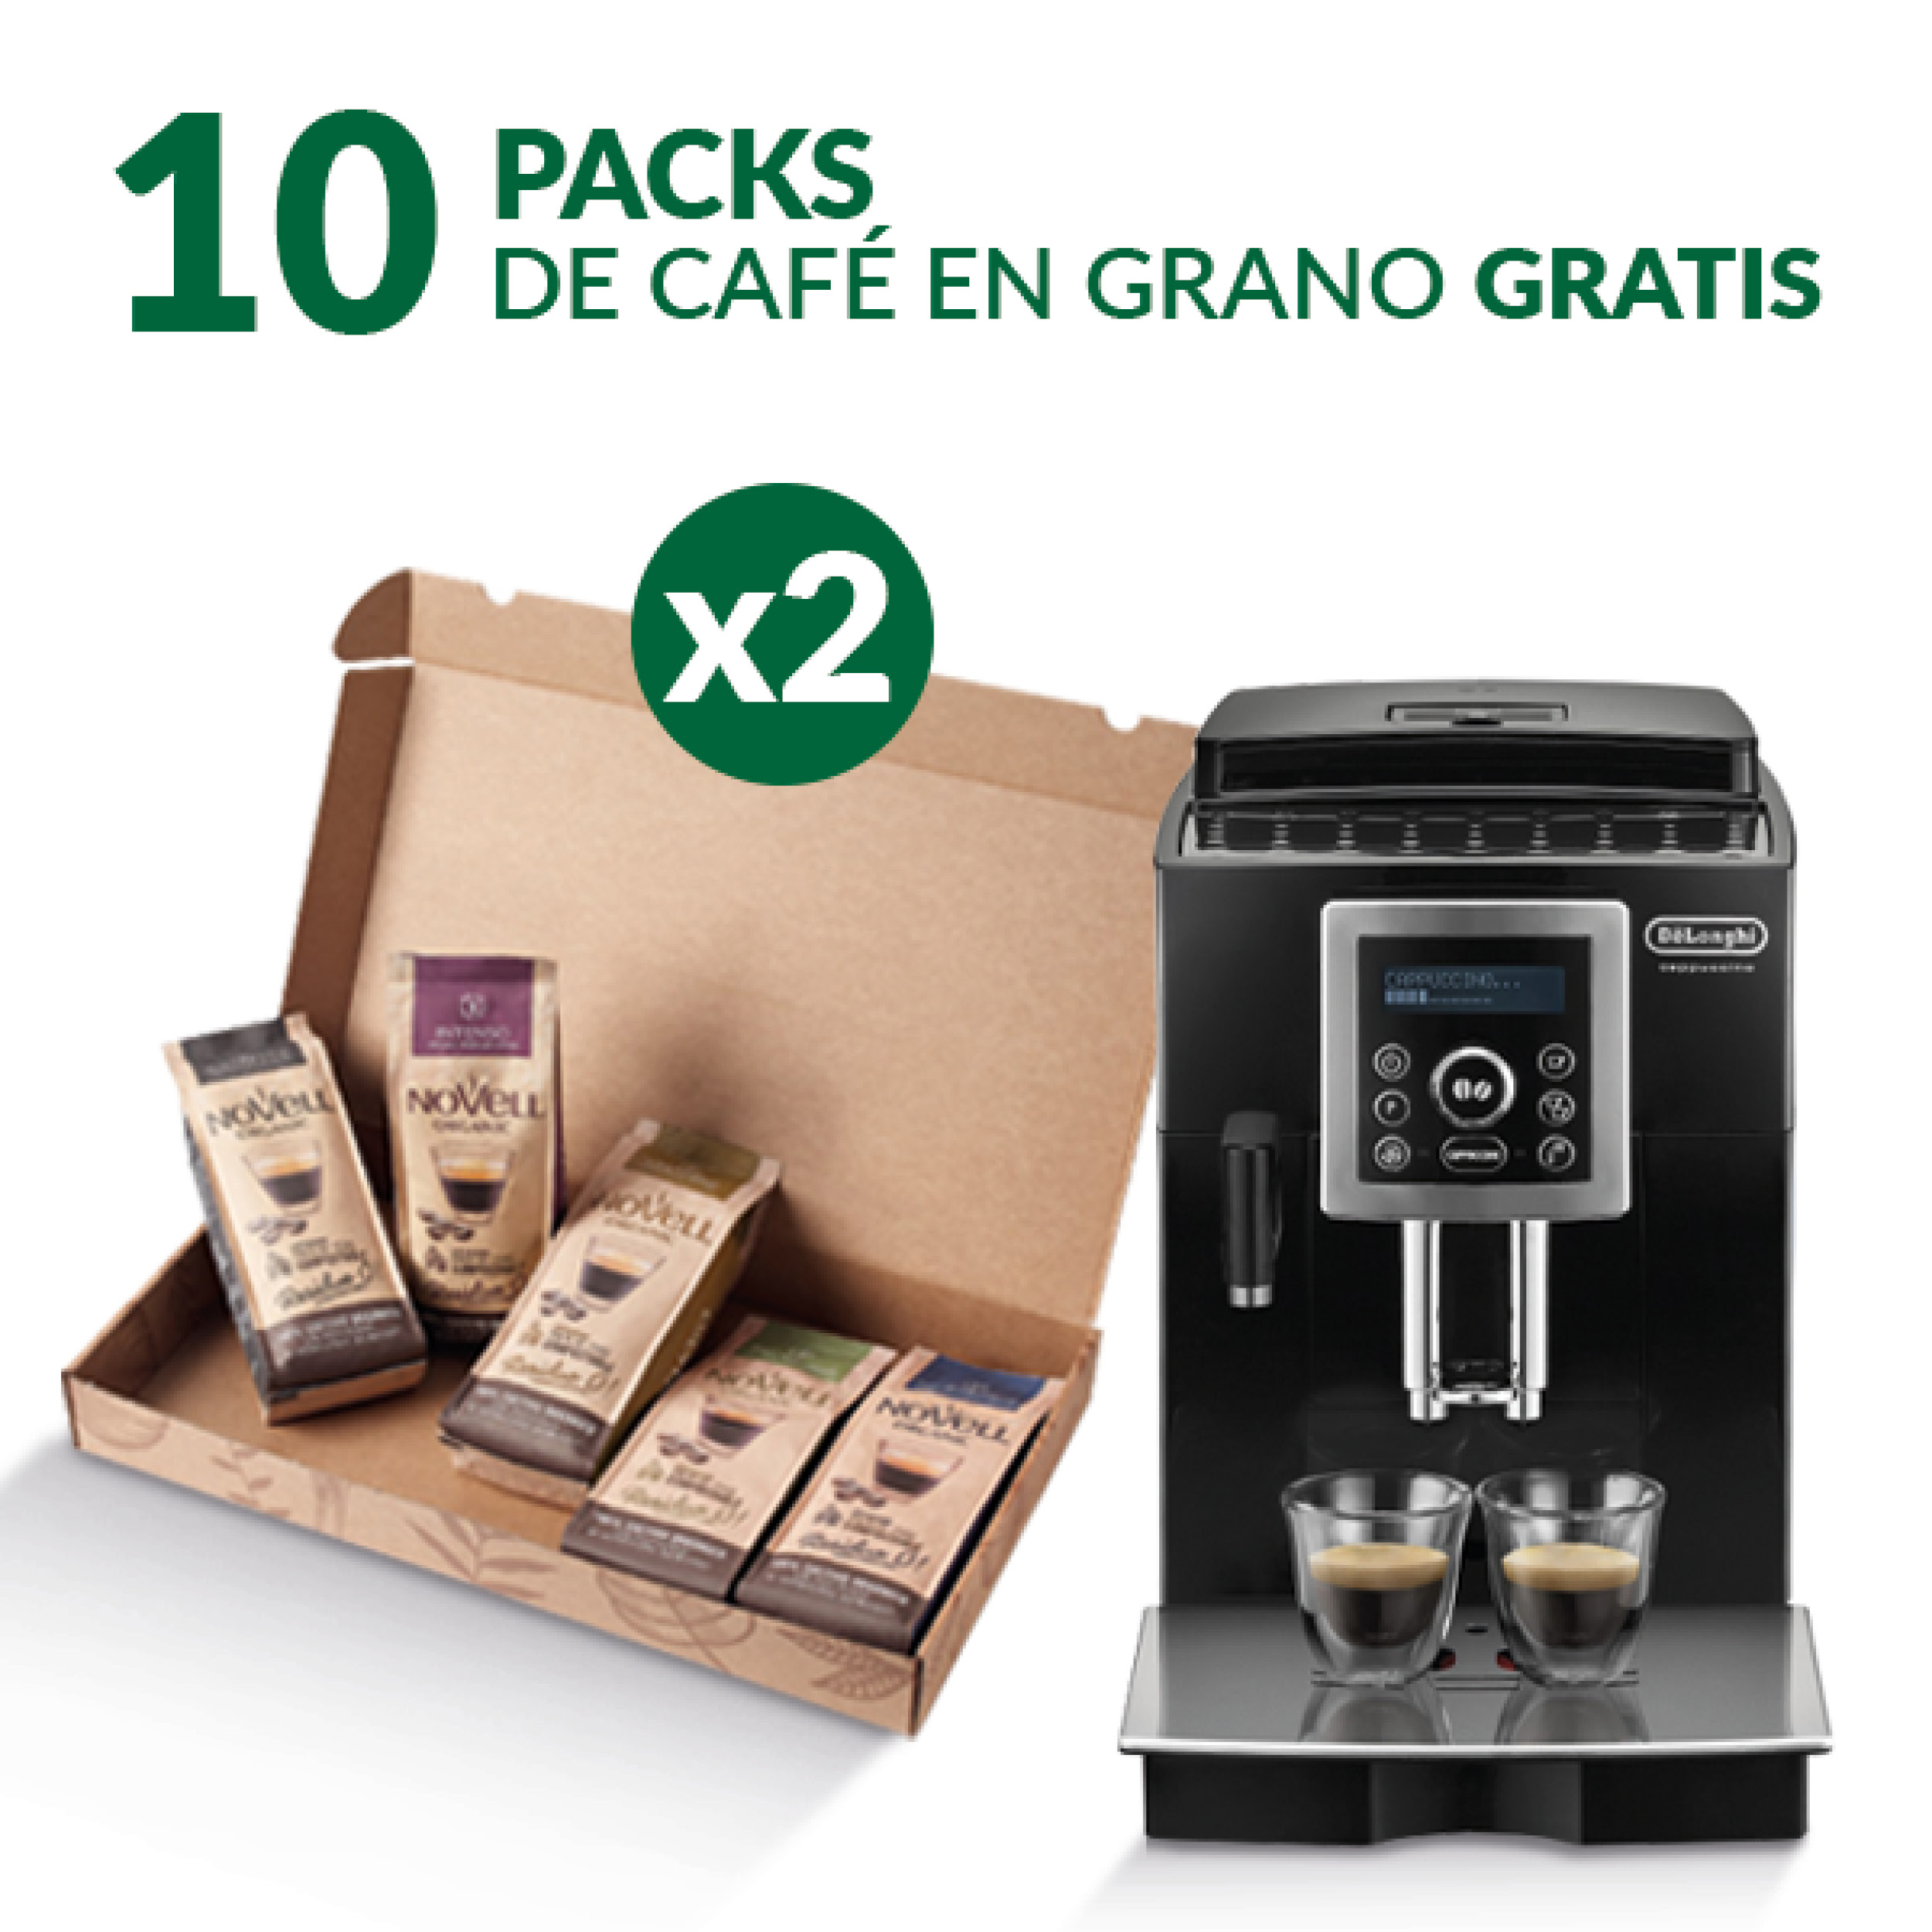 Cafetera Superautomática De'Longhi + 10 Paquetes de Café en Grano